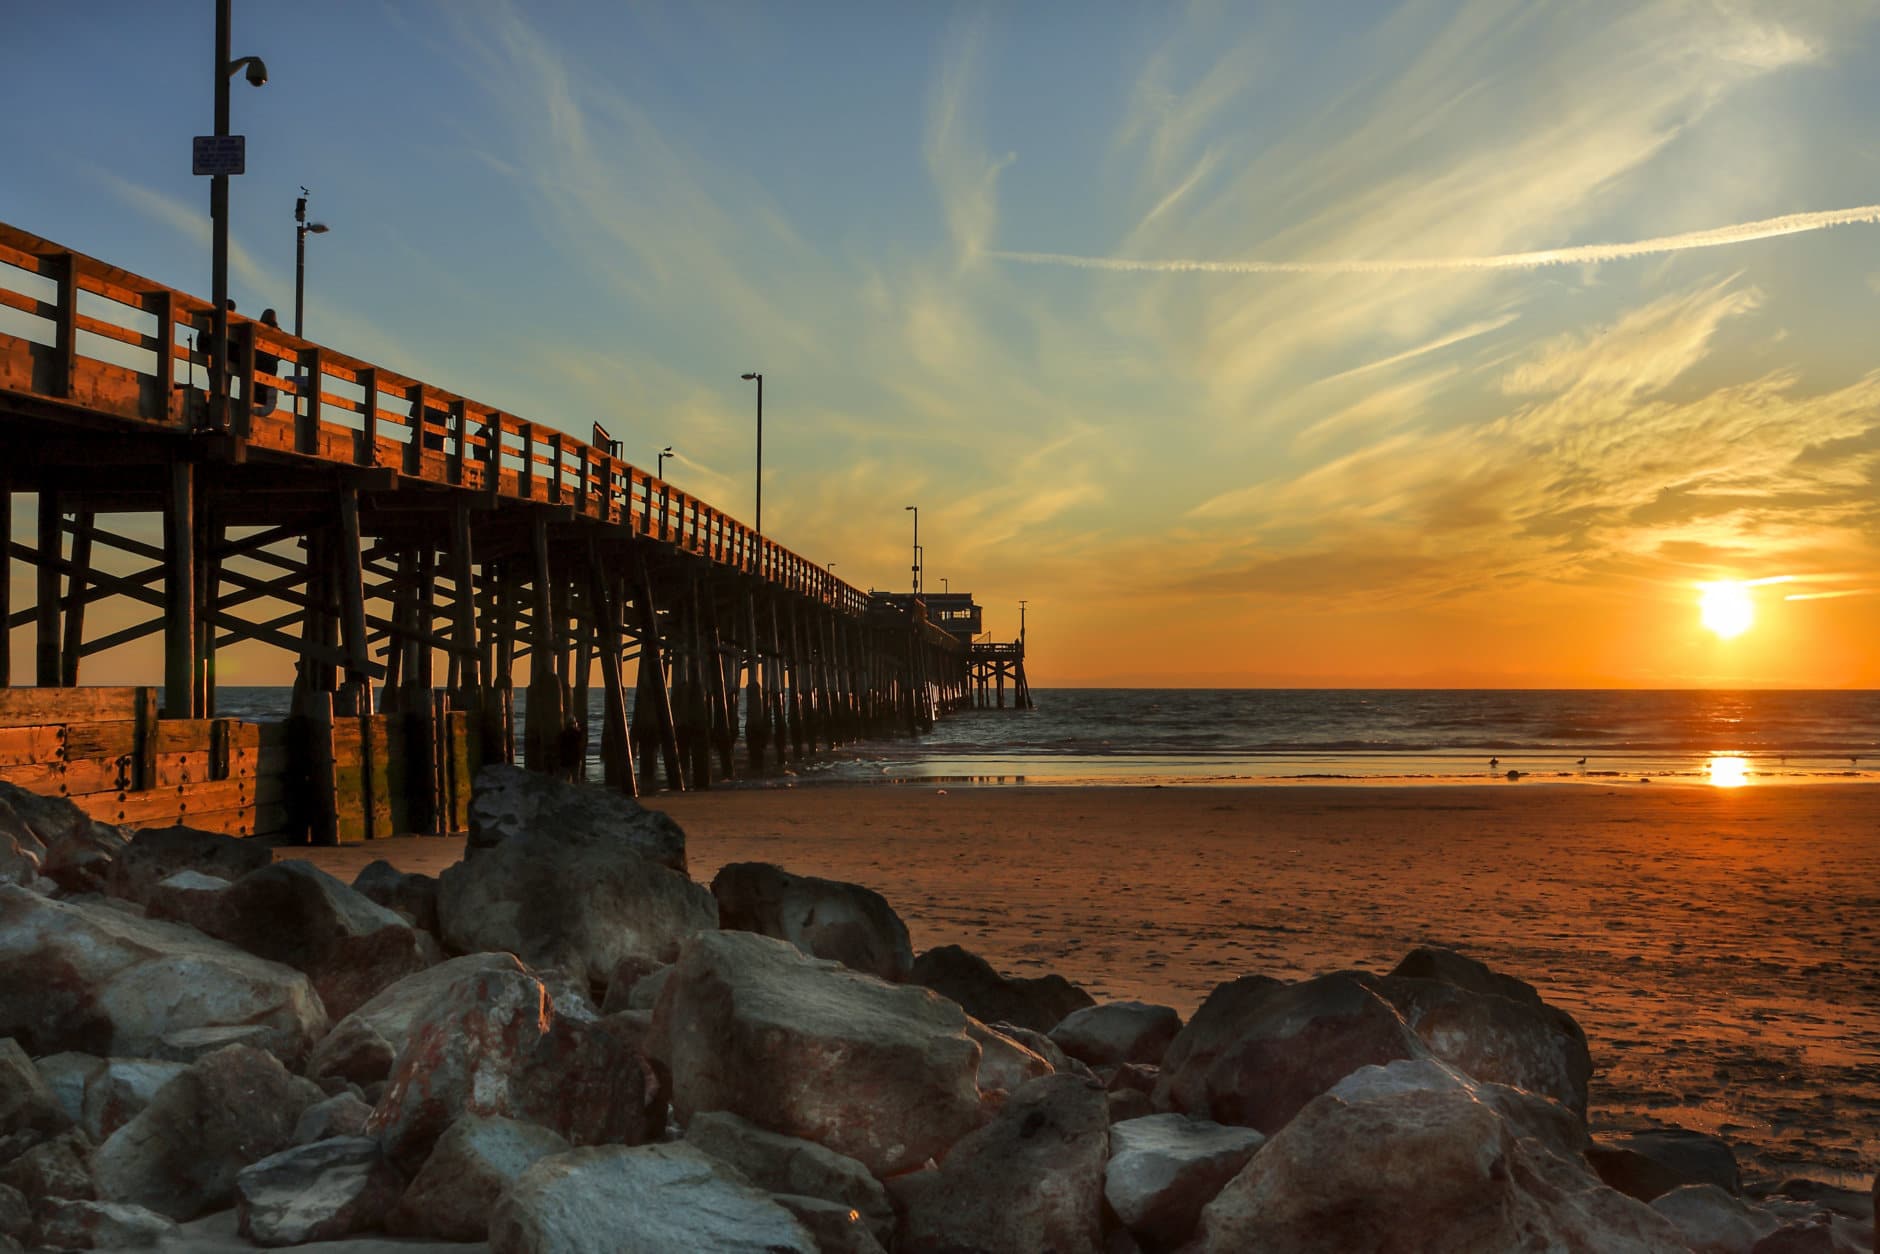 Sunset at Newport beach pier, California